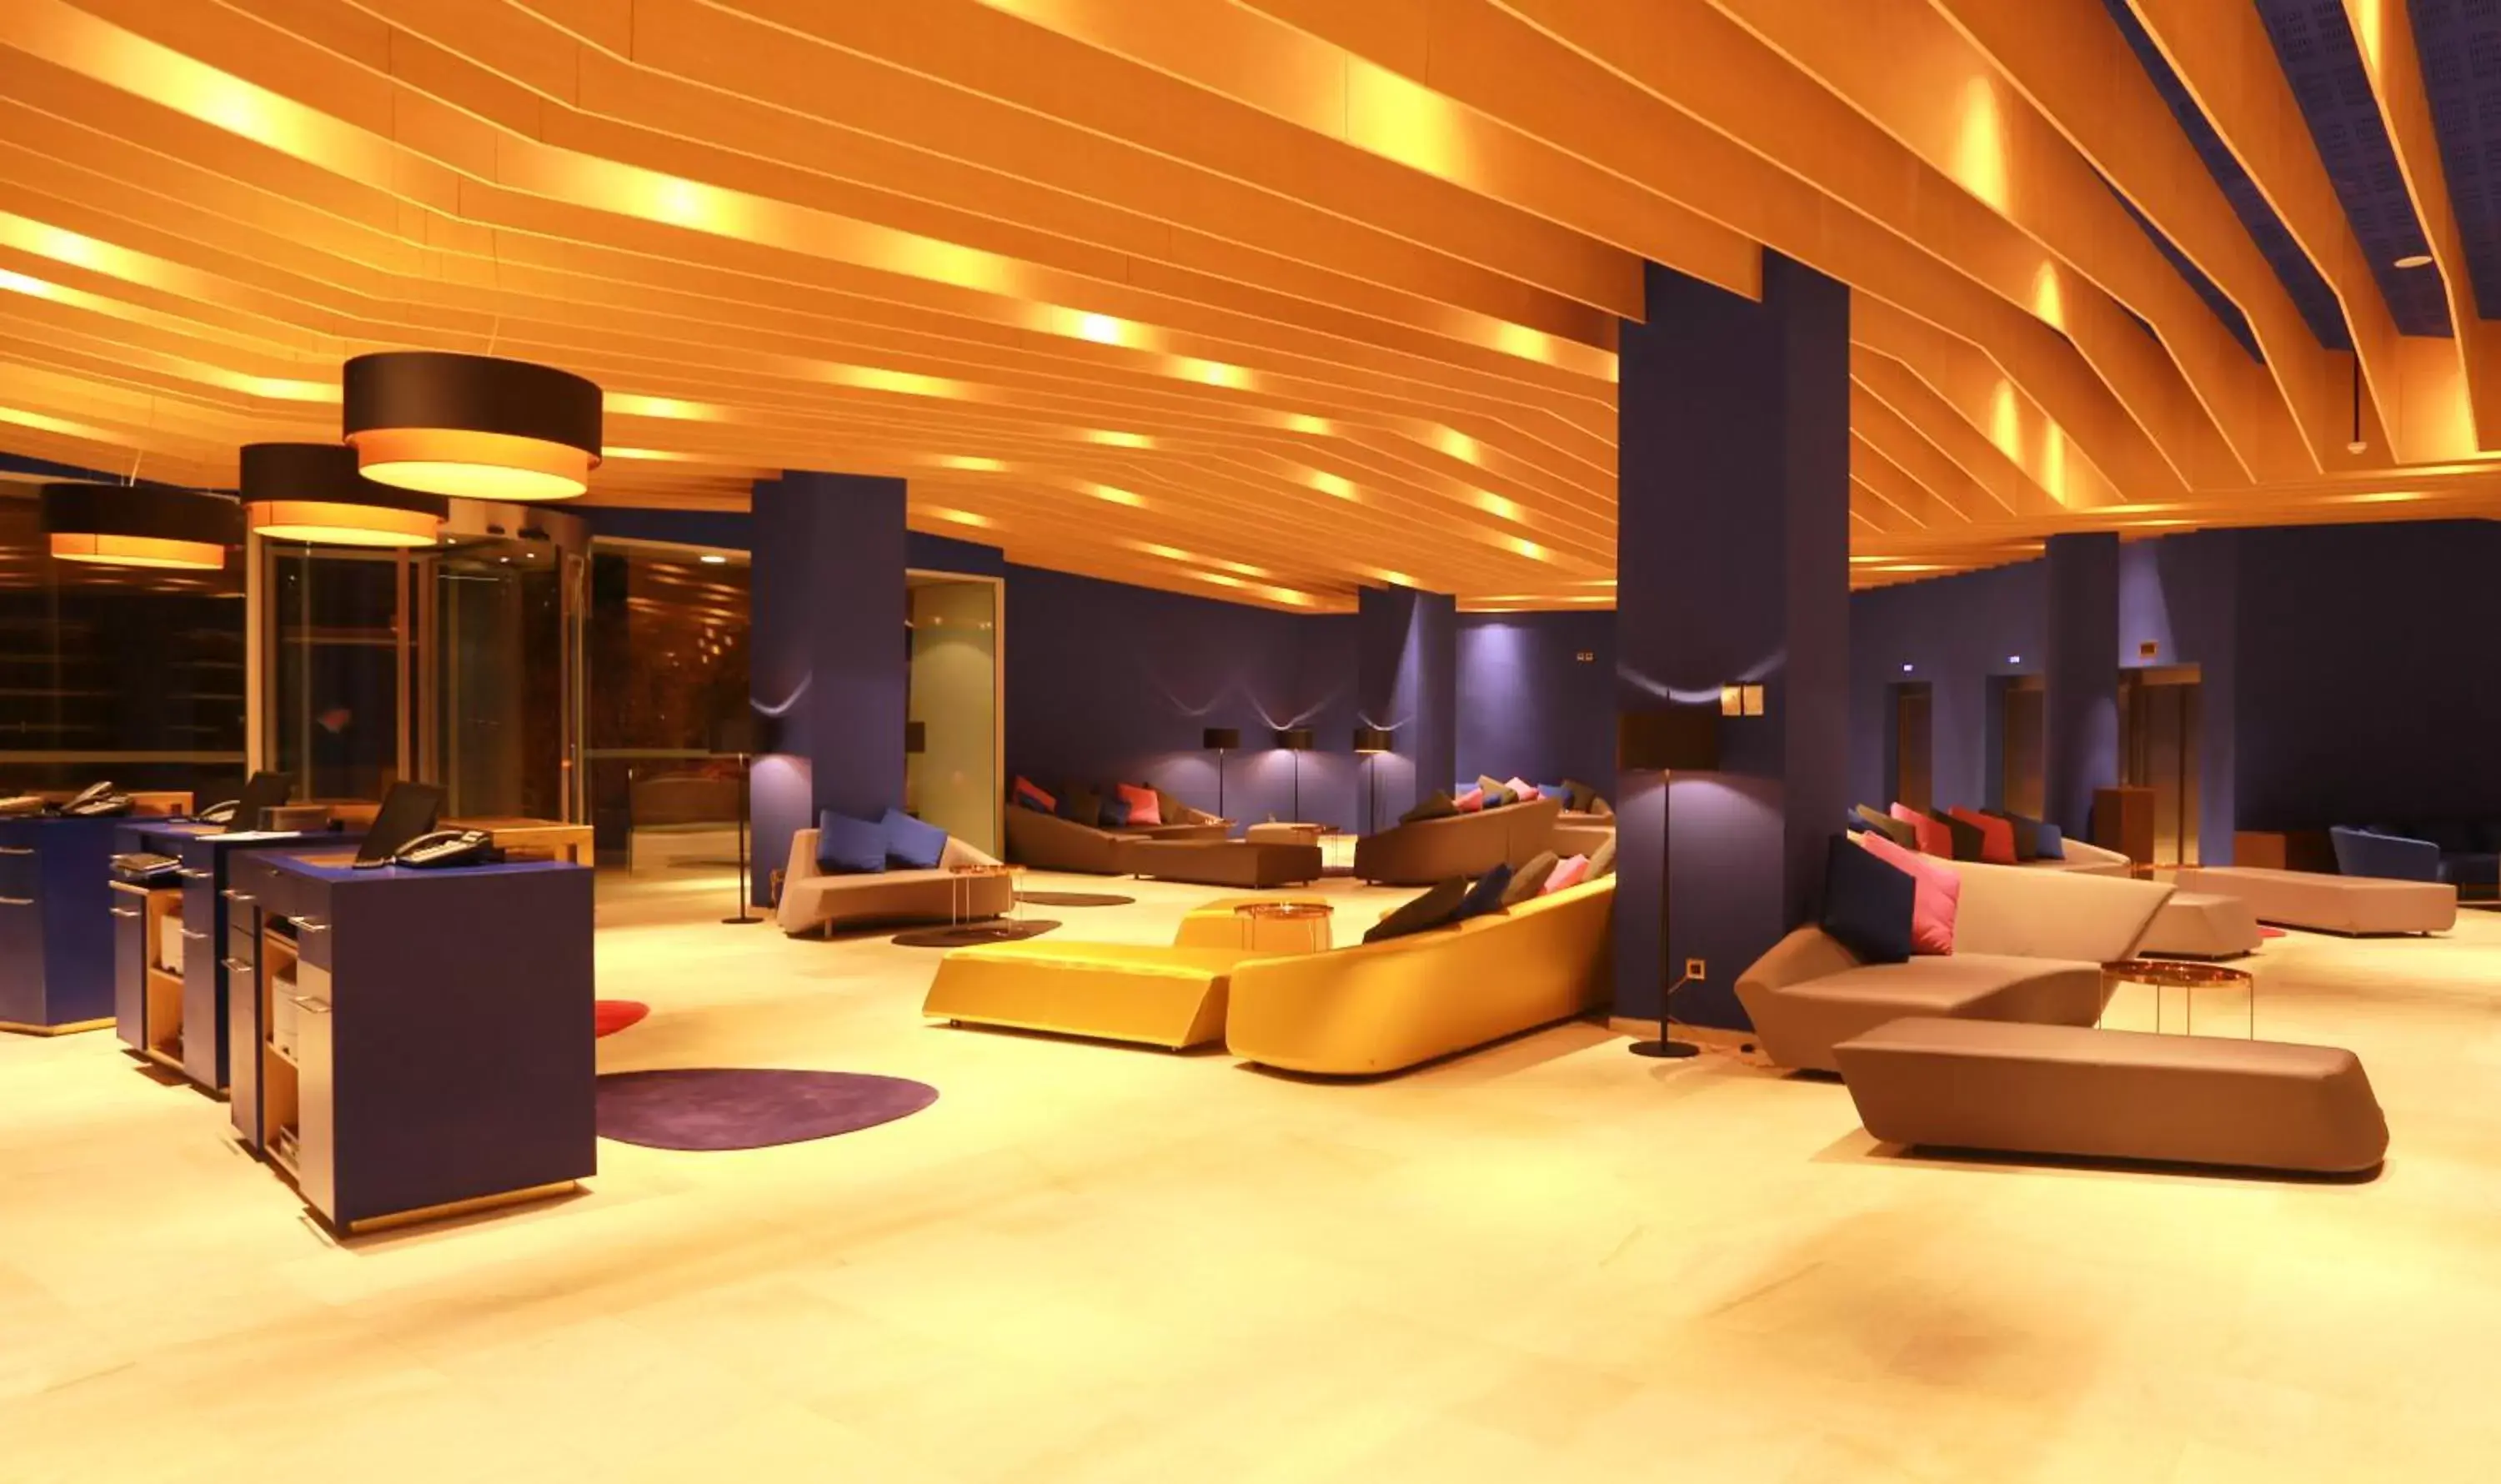 Lobby or reception in Mercure Quemado Al-Hoceima Resort